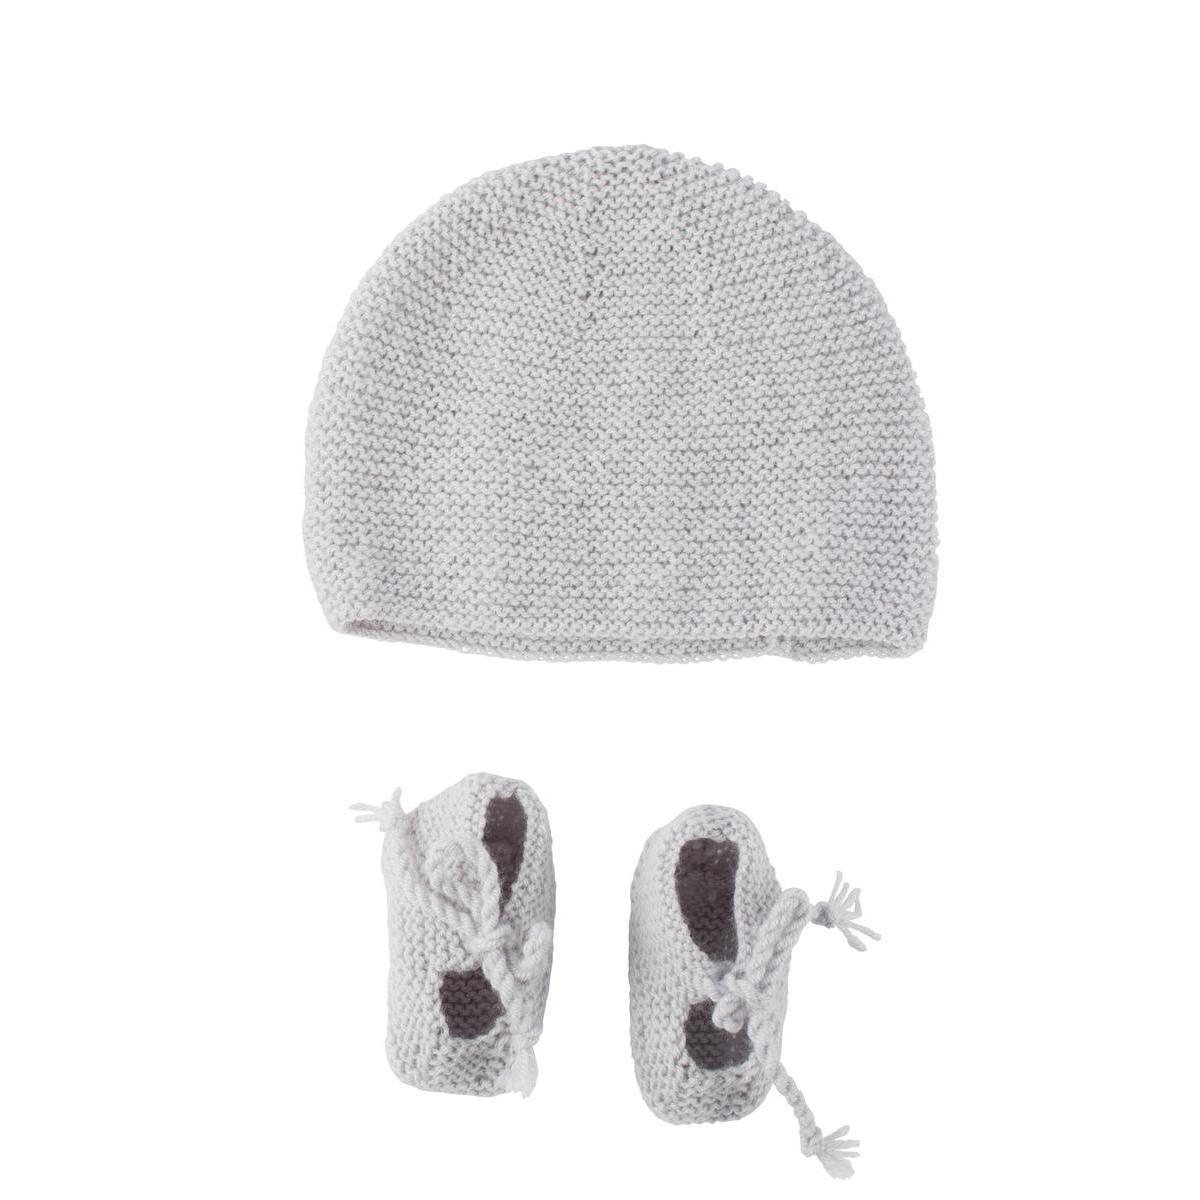 Kit bonnet + chaussons - Blanc et gris perle